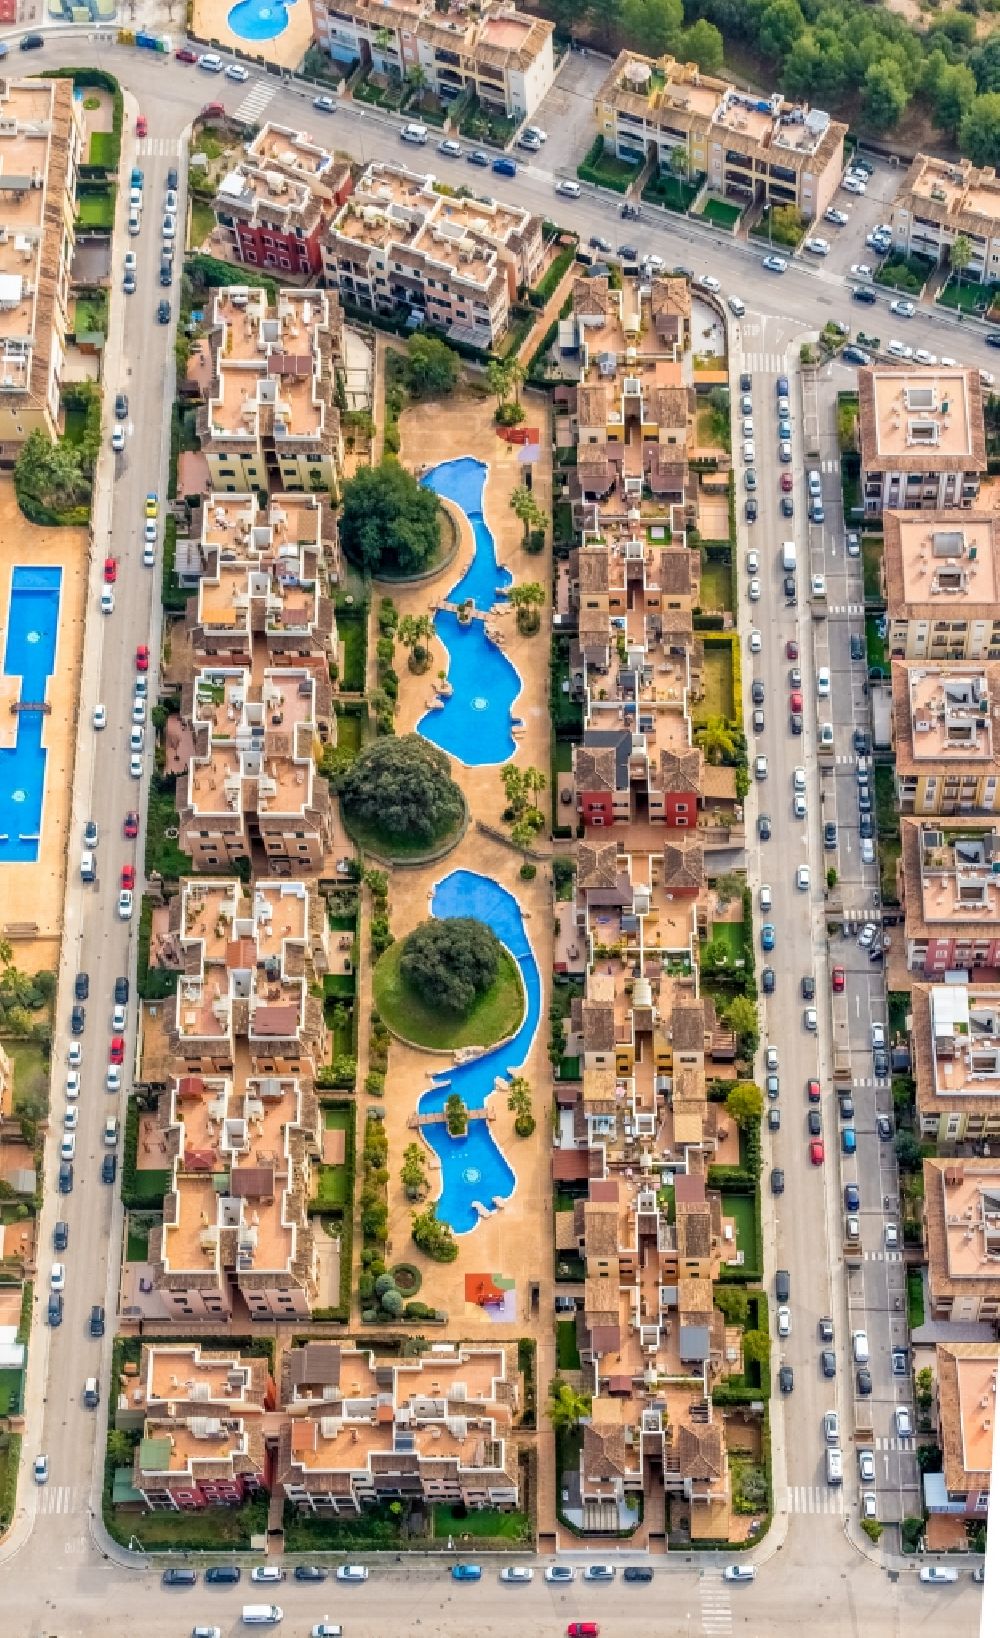 Aerial photograph Marratxi - Residential area of a multi-family house settlement between Carrer de l' Aljub, Carrer del Pujol, Carrer del Celler and Carrer de la SA?quia in Marratxi in Islas Baleares, Spain